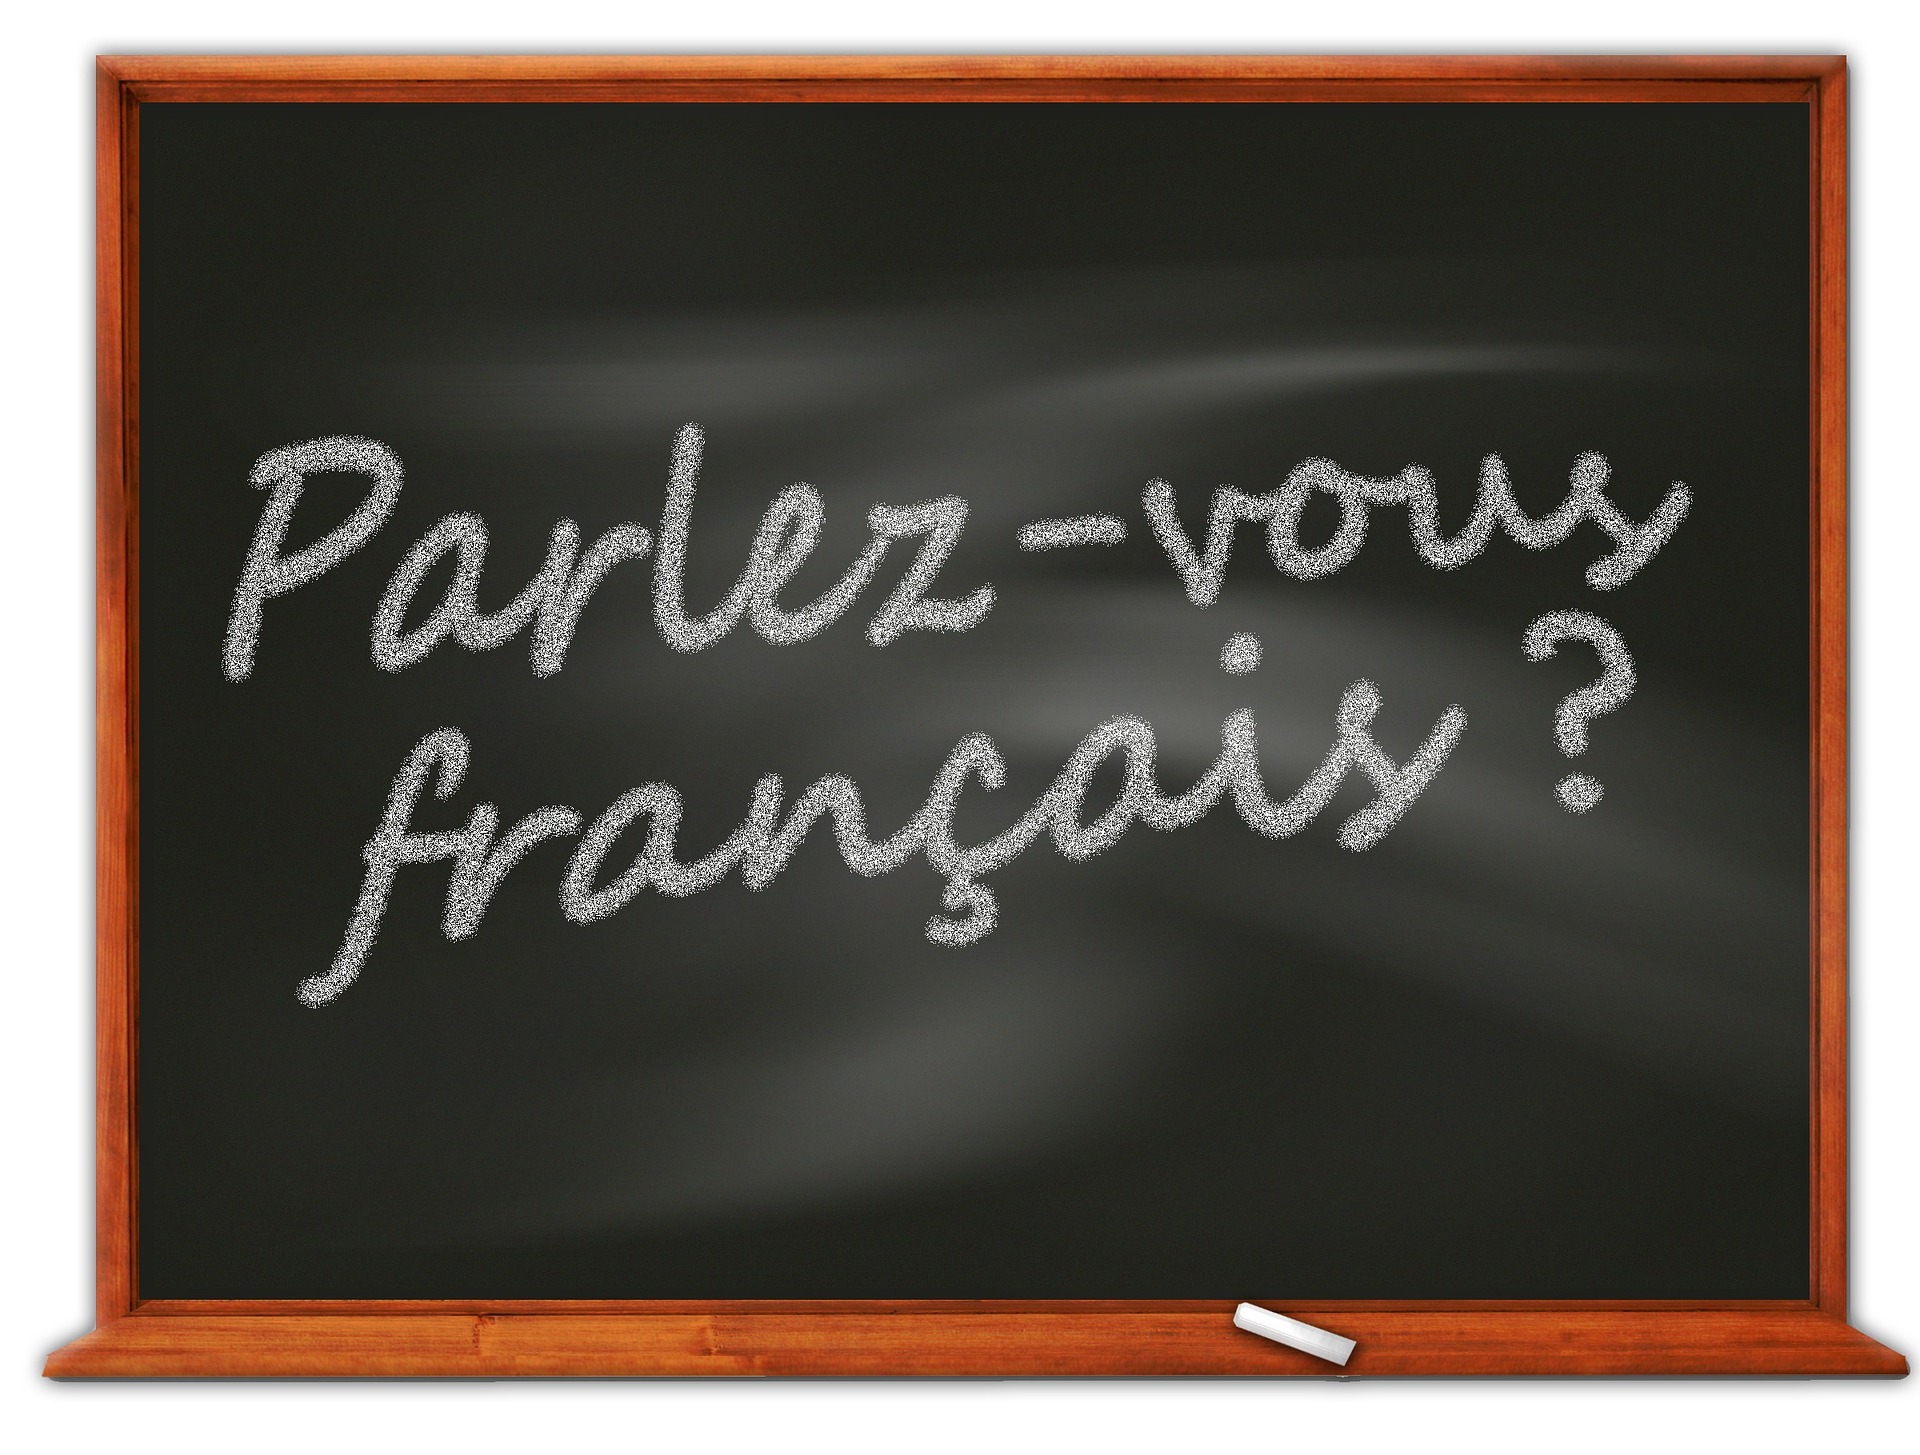 blackboard asking parlez-vous francais?